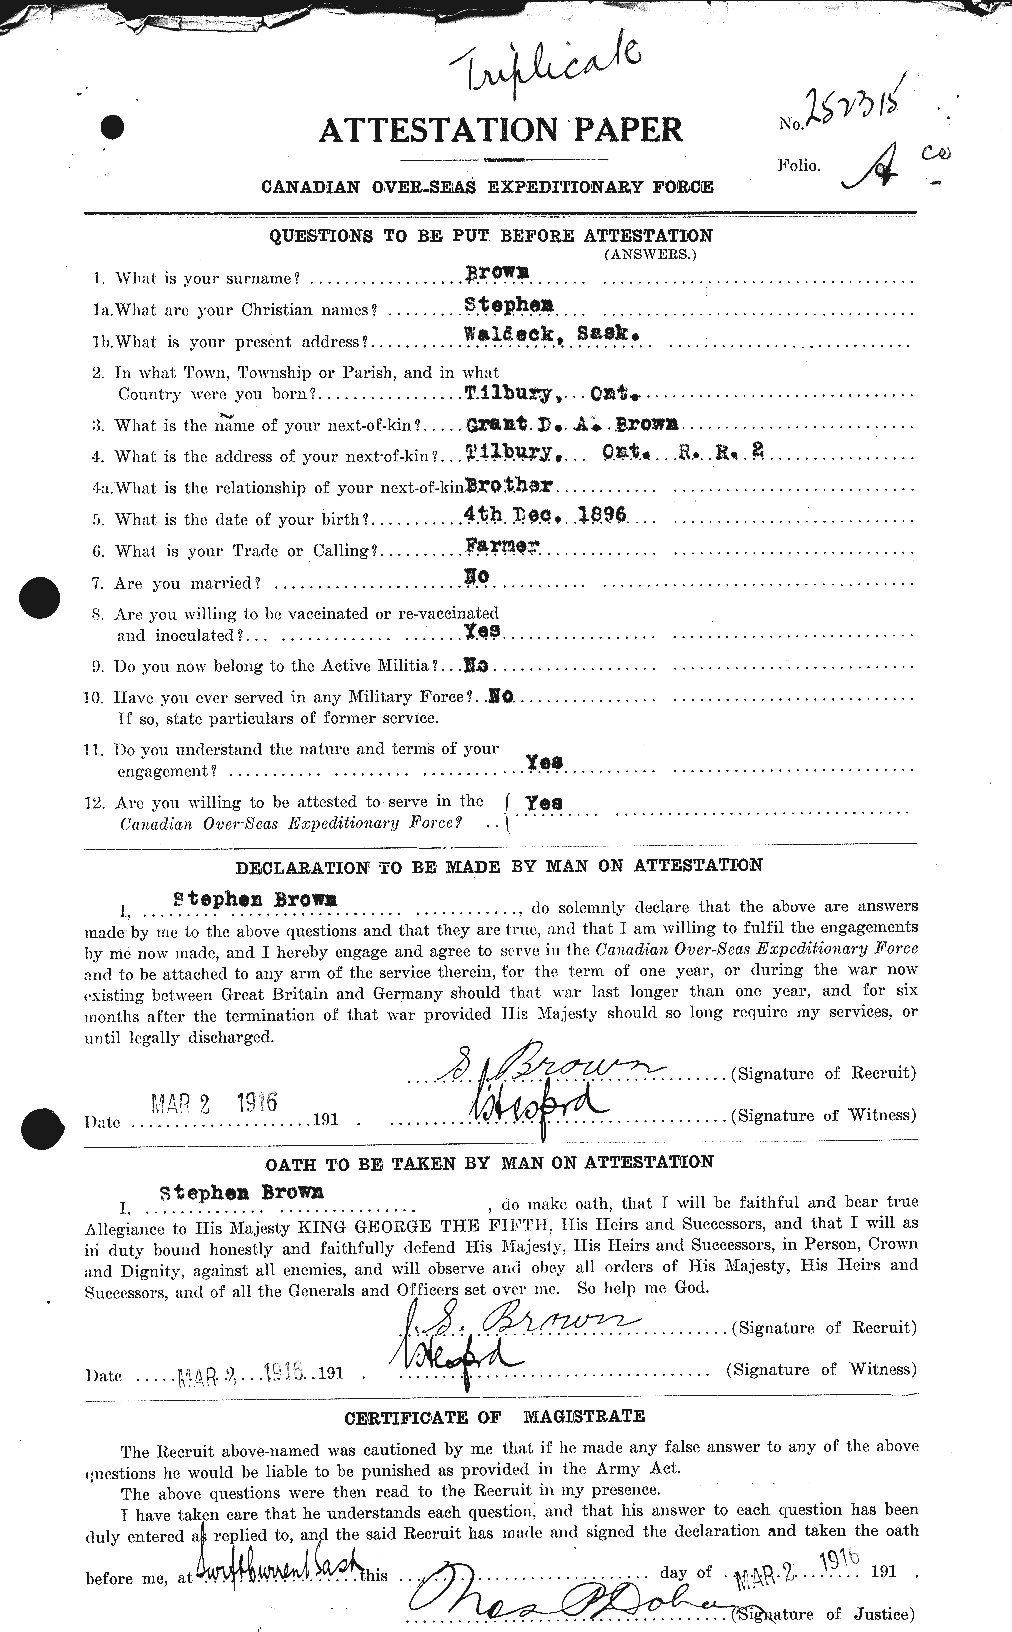 Dossiers du Personnel de la Première Guerre mondiale - CEC 266442a